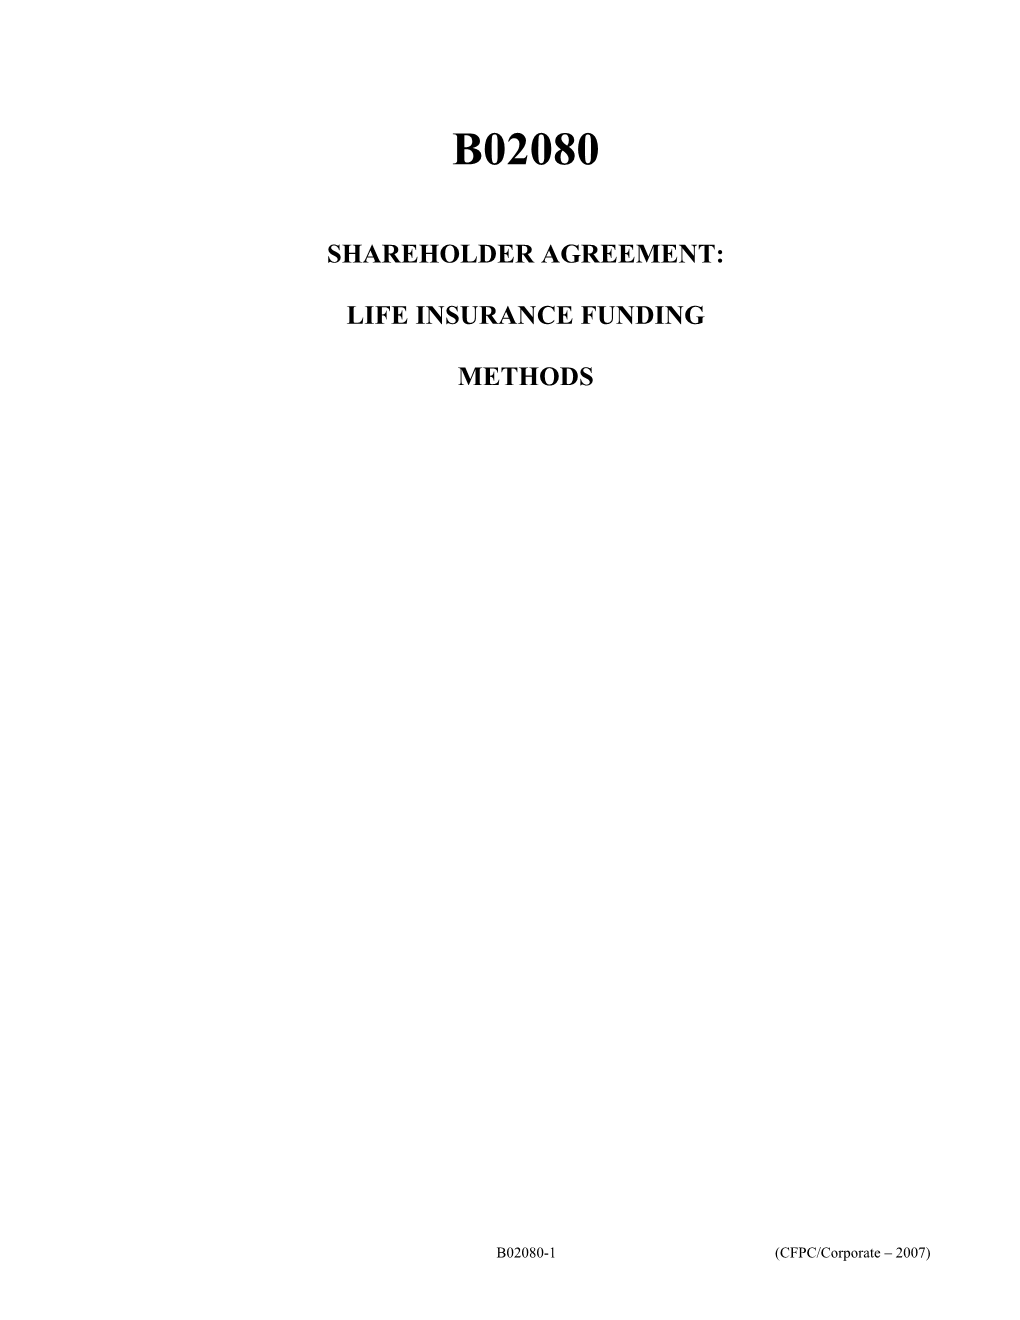 B02080 - Shareholder Agreement: Life Insurance Funding Methods